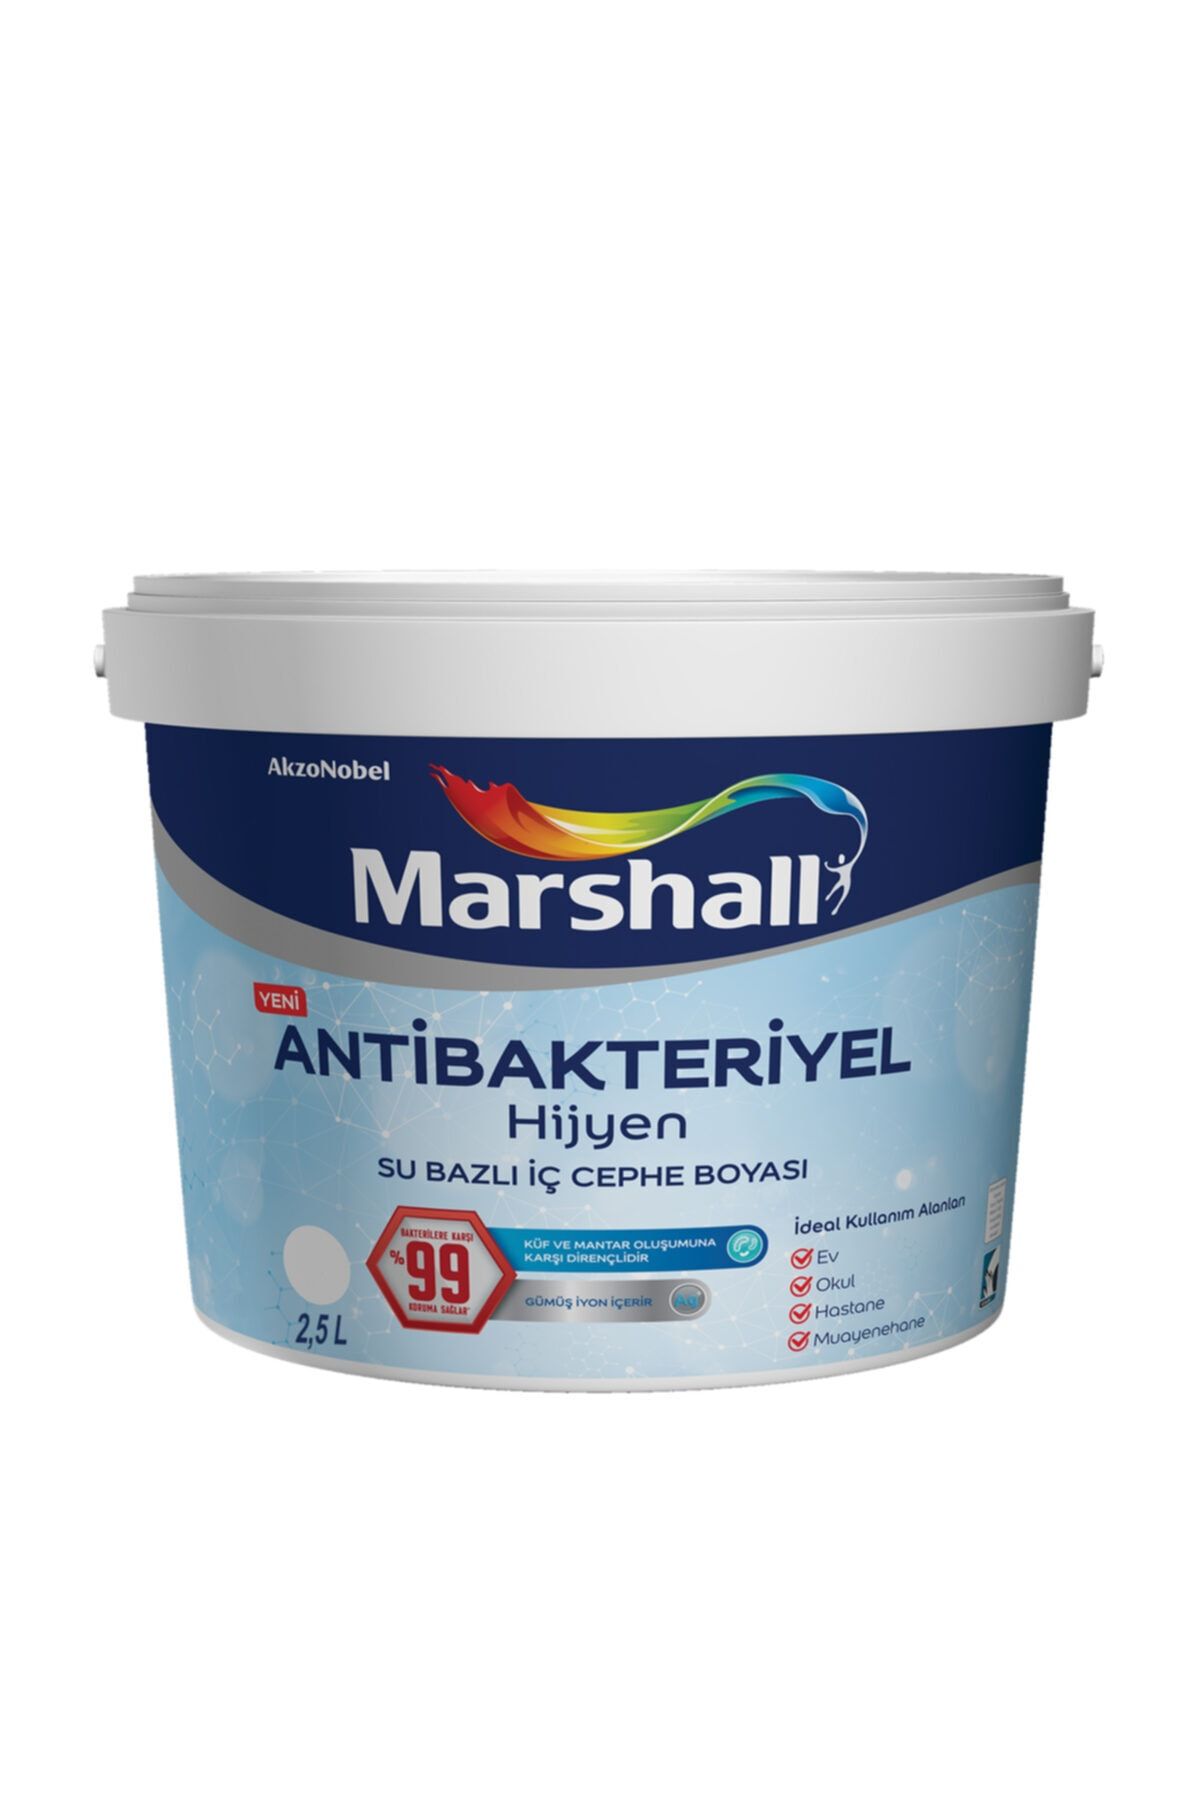 Marshall Antibakteriyel Hijyen Iç Cephe Boyası Serap 2,5 lt 3,5 kg